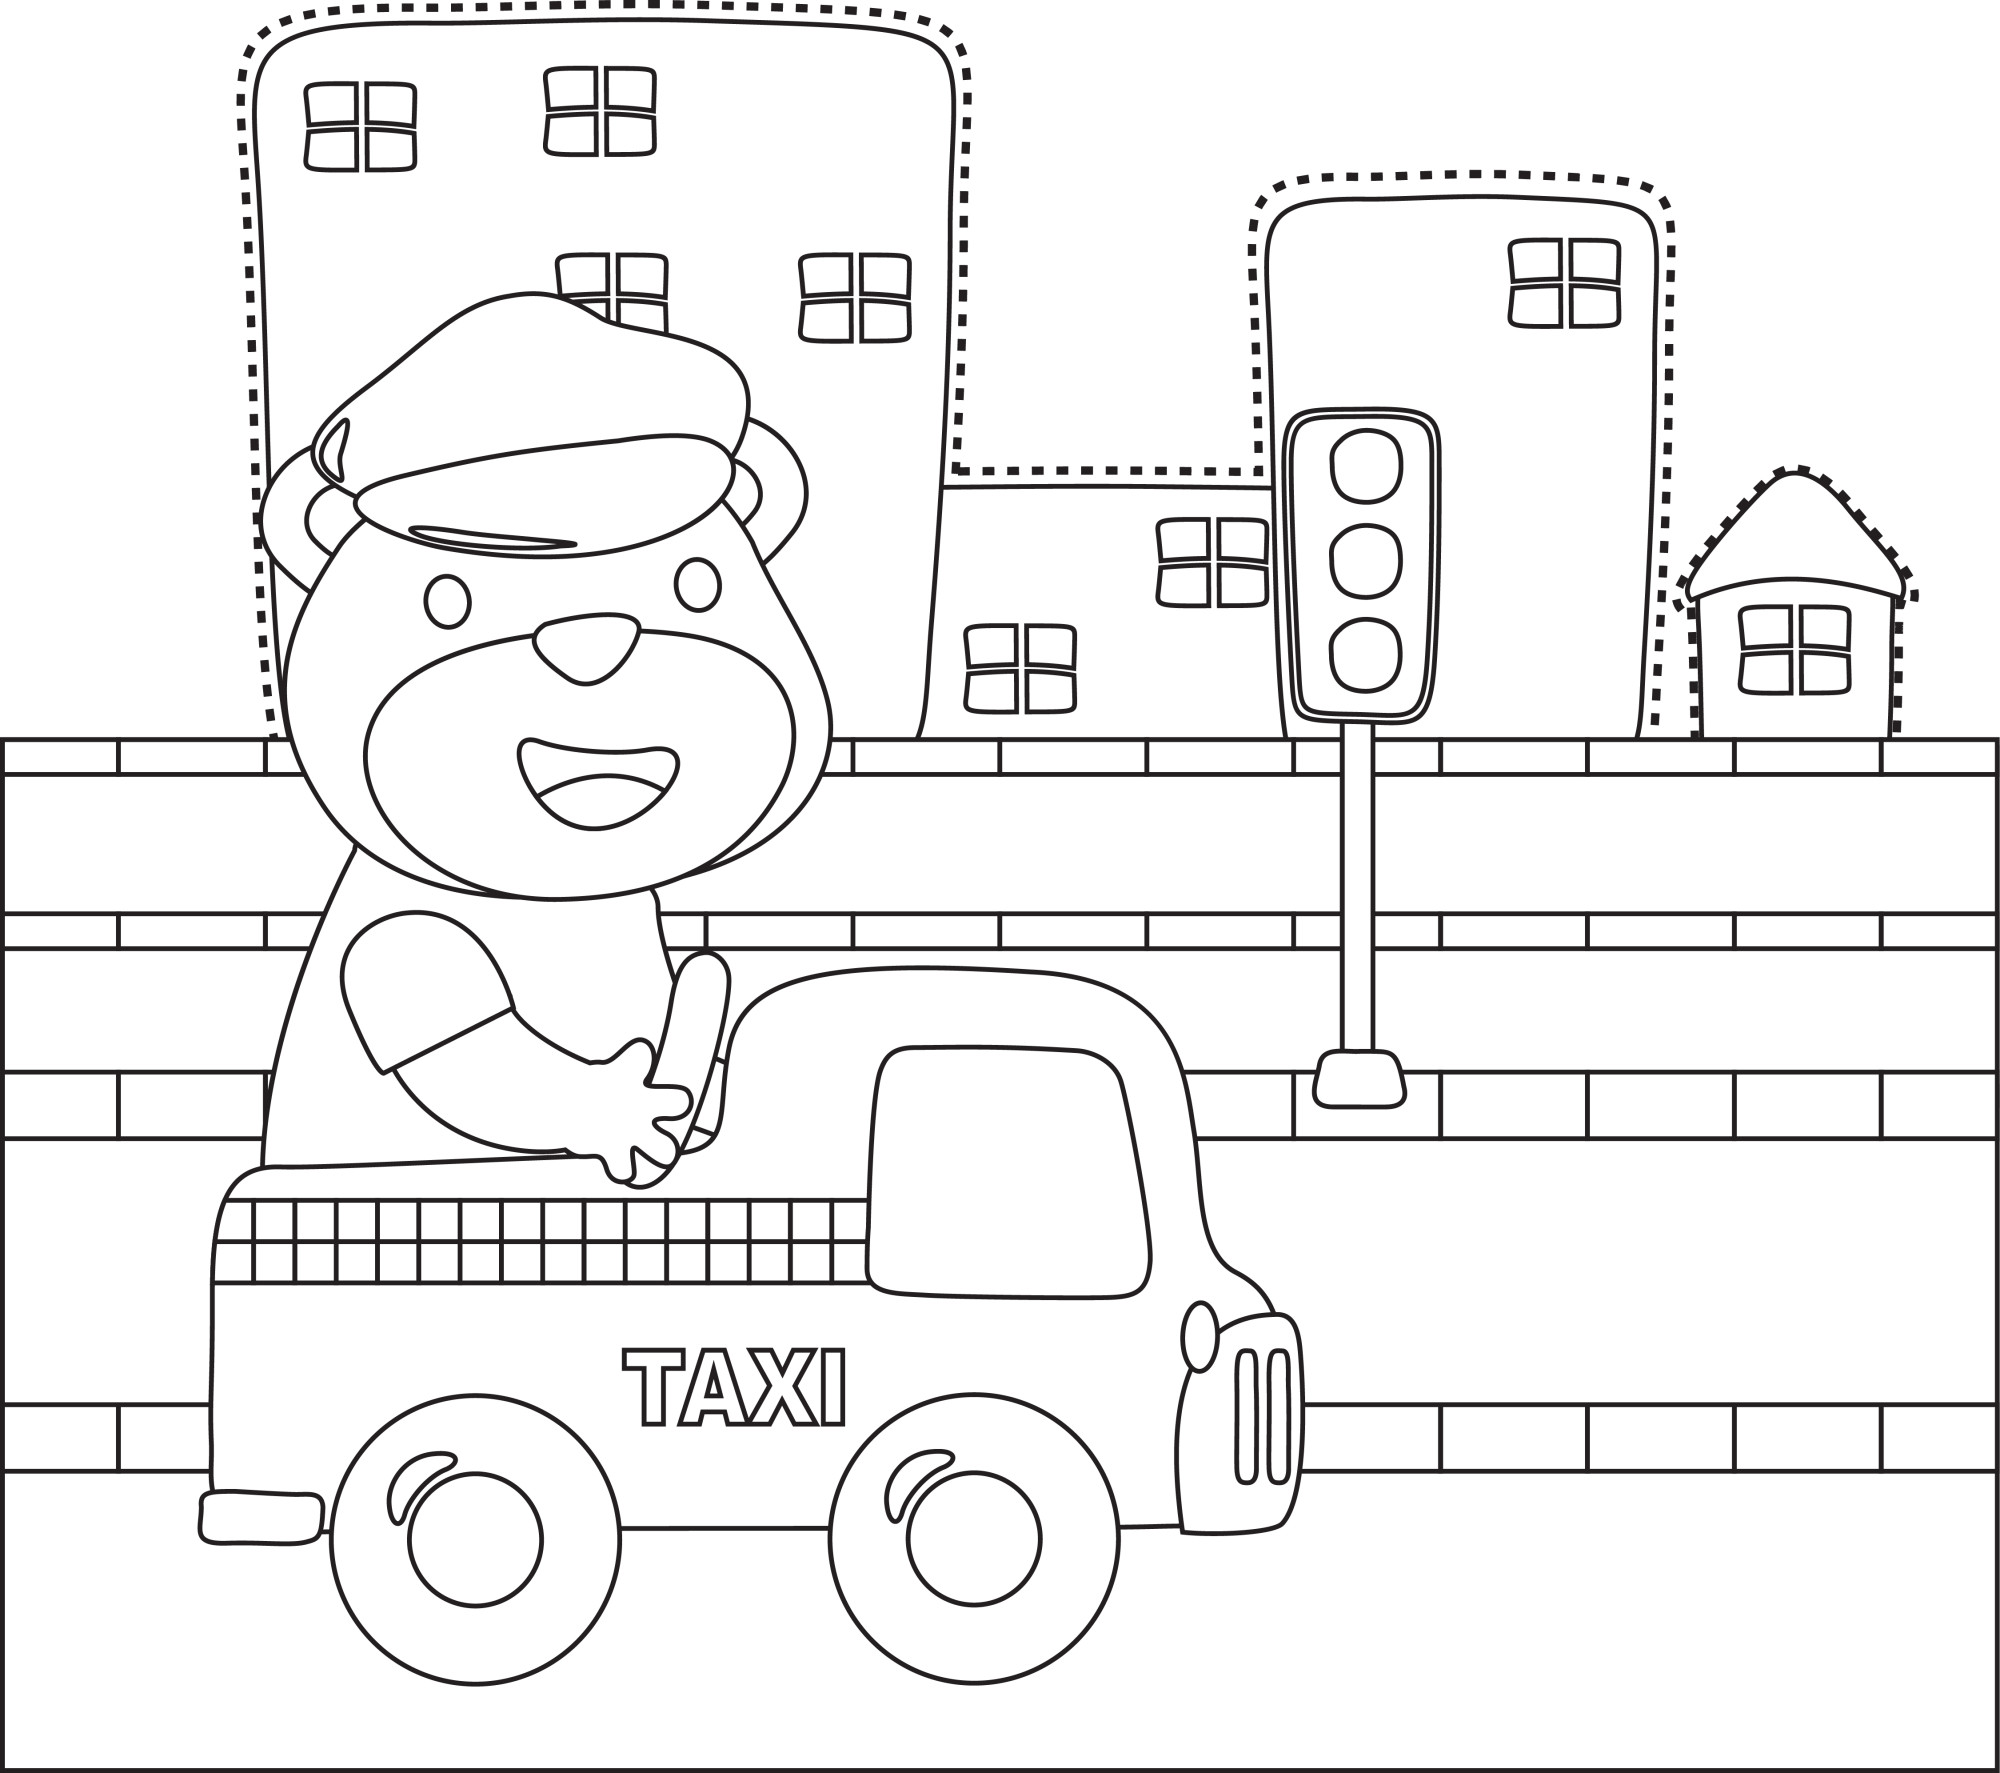 Раскраска для детей: такси едет по городу с водителем медведем